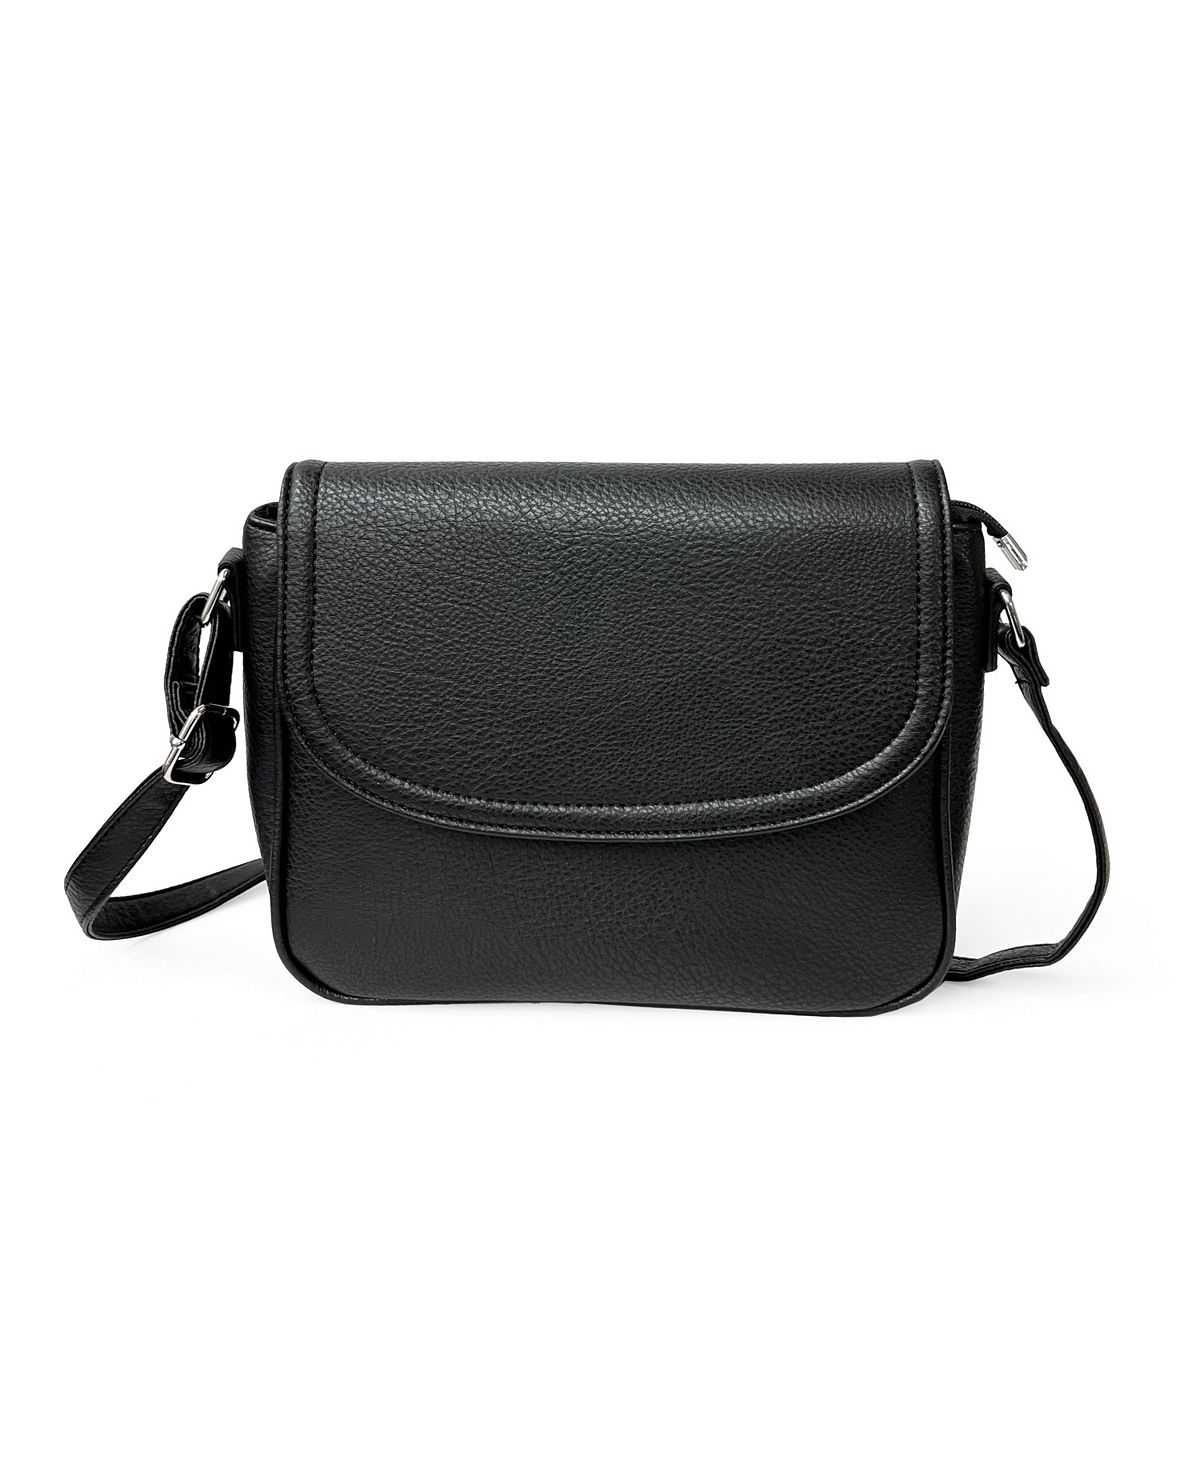 Женская сумка через плечо с передним клапаном NICCI, черный